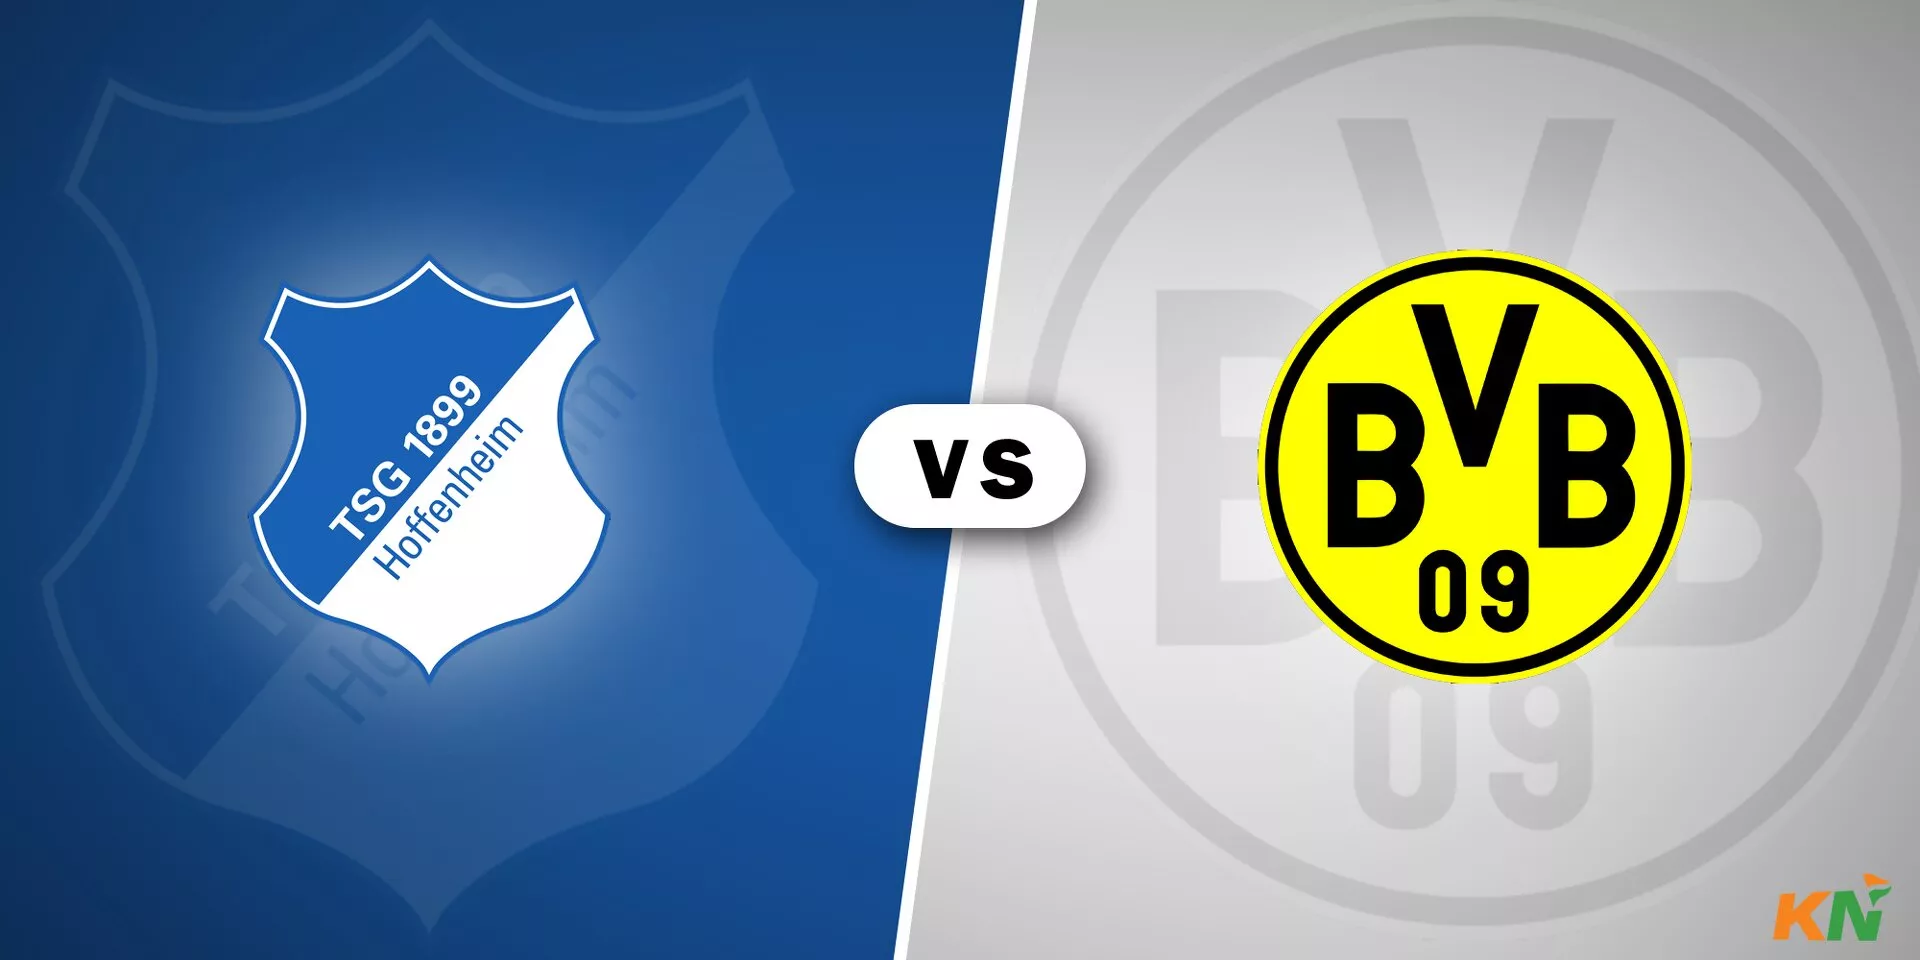 Hoffenheim vs Borussia Dortmund